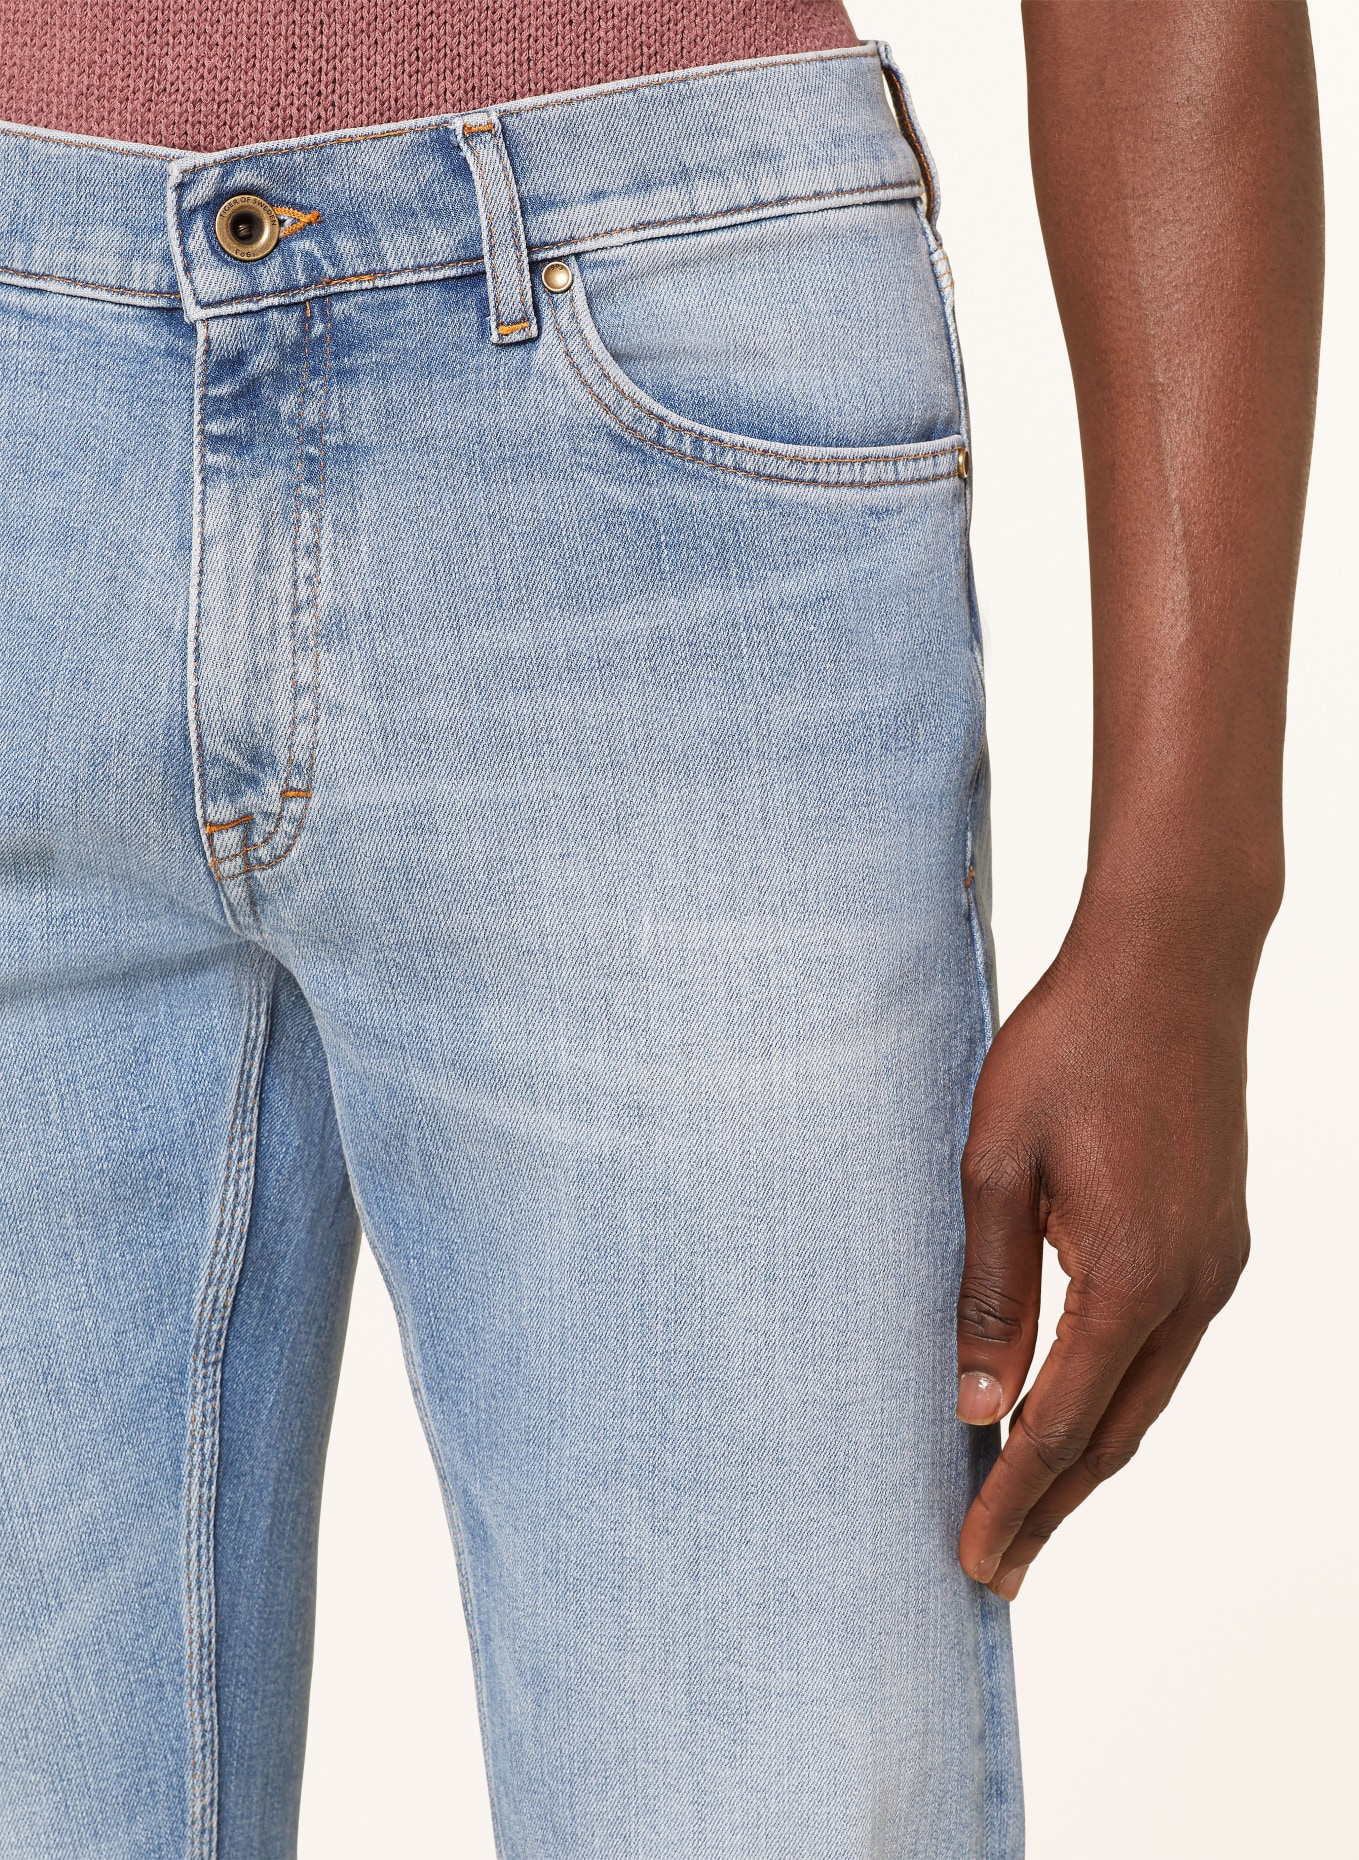 TIGER OF SWEDEN Jeans DES Slim Fit, Farbe: 200 Light blue (Bild 5)